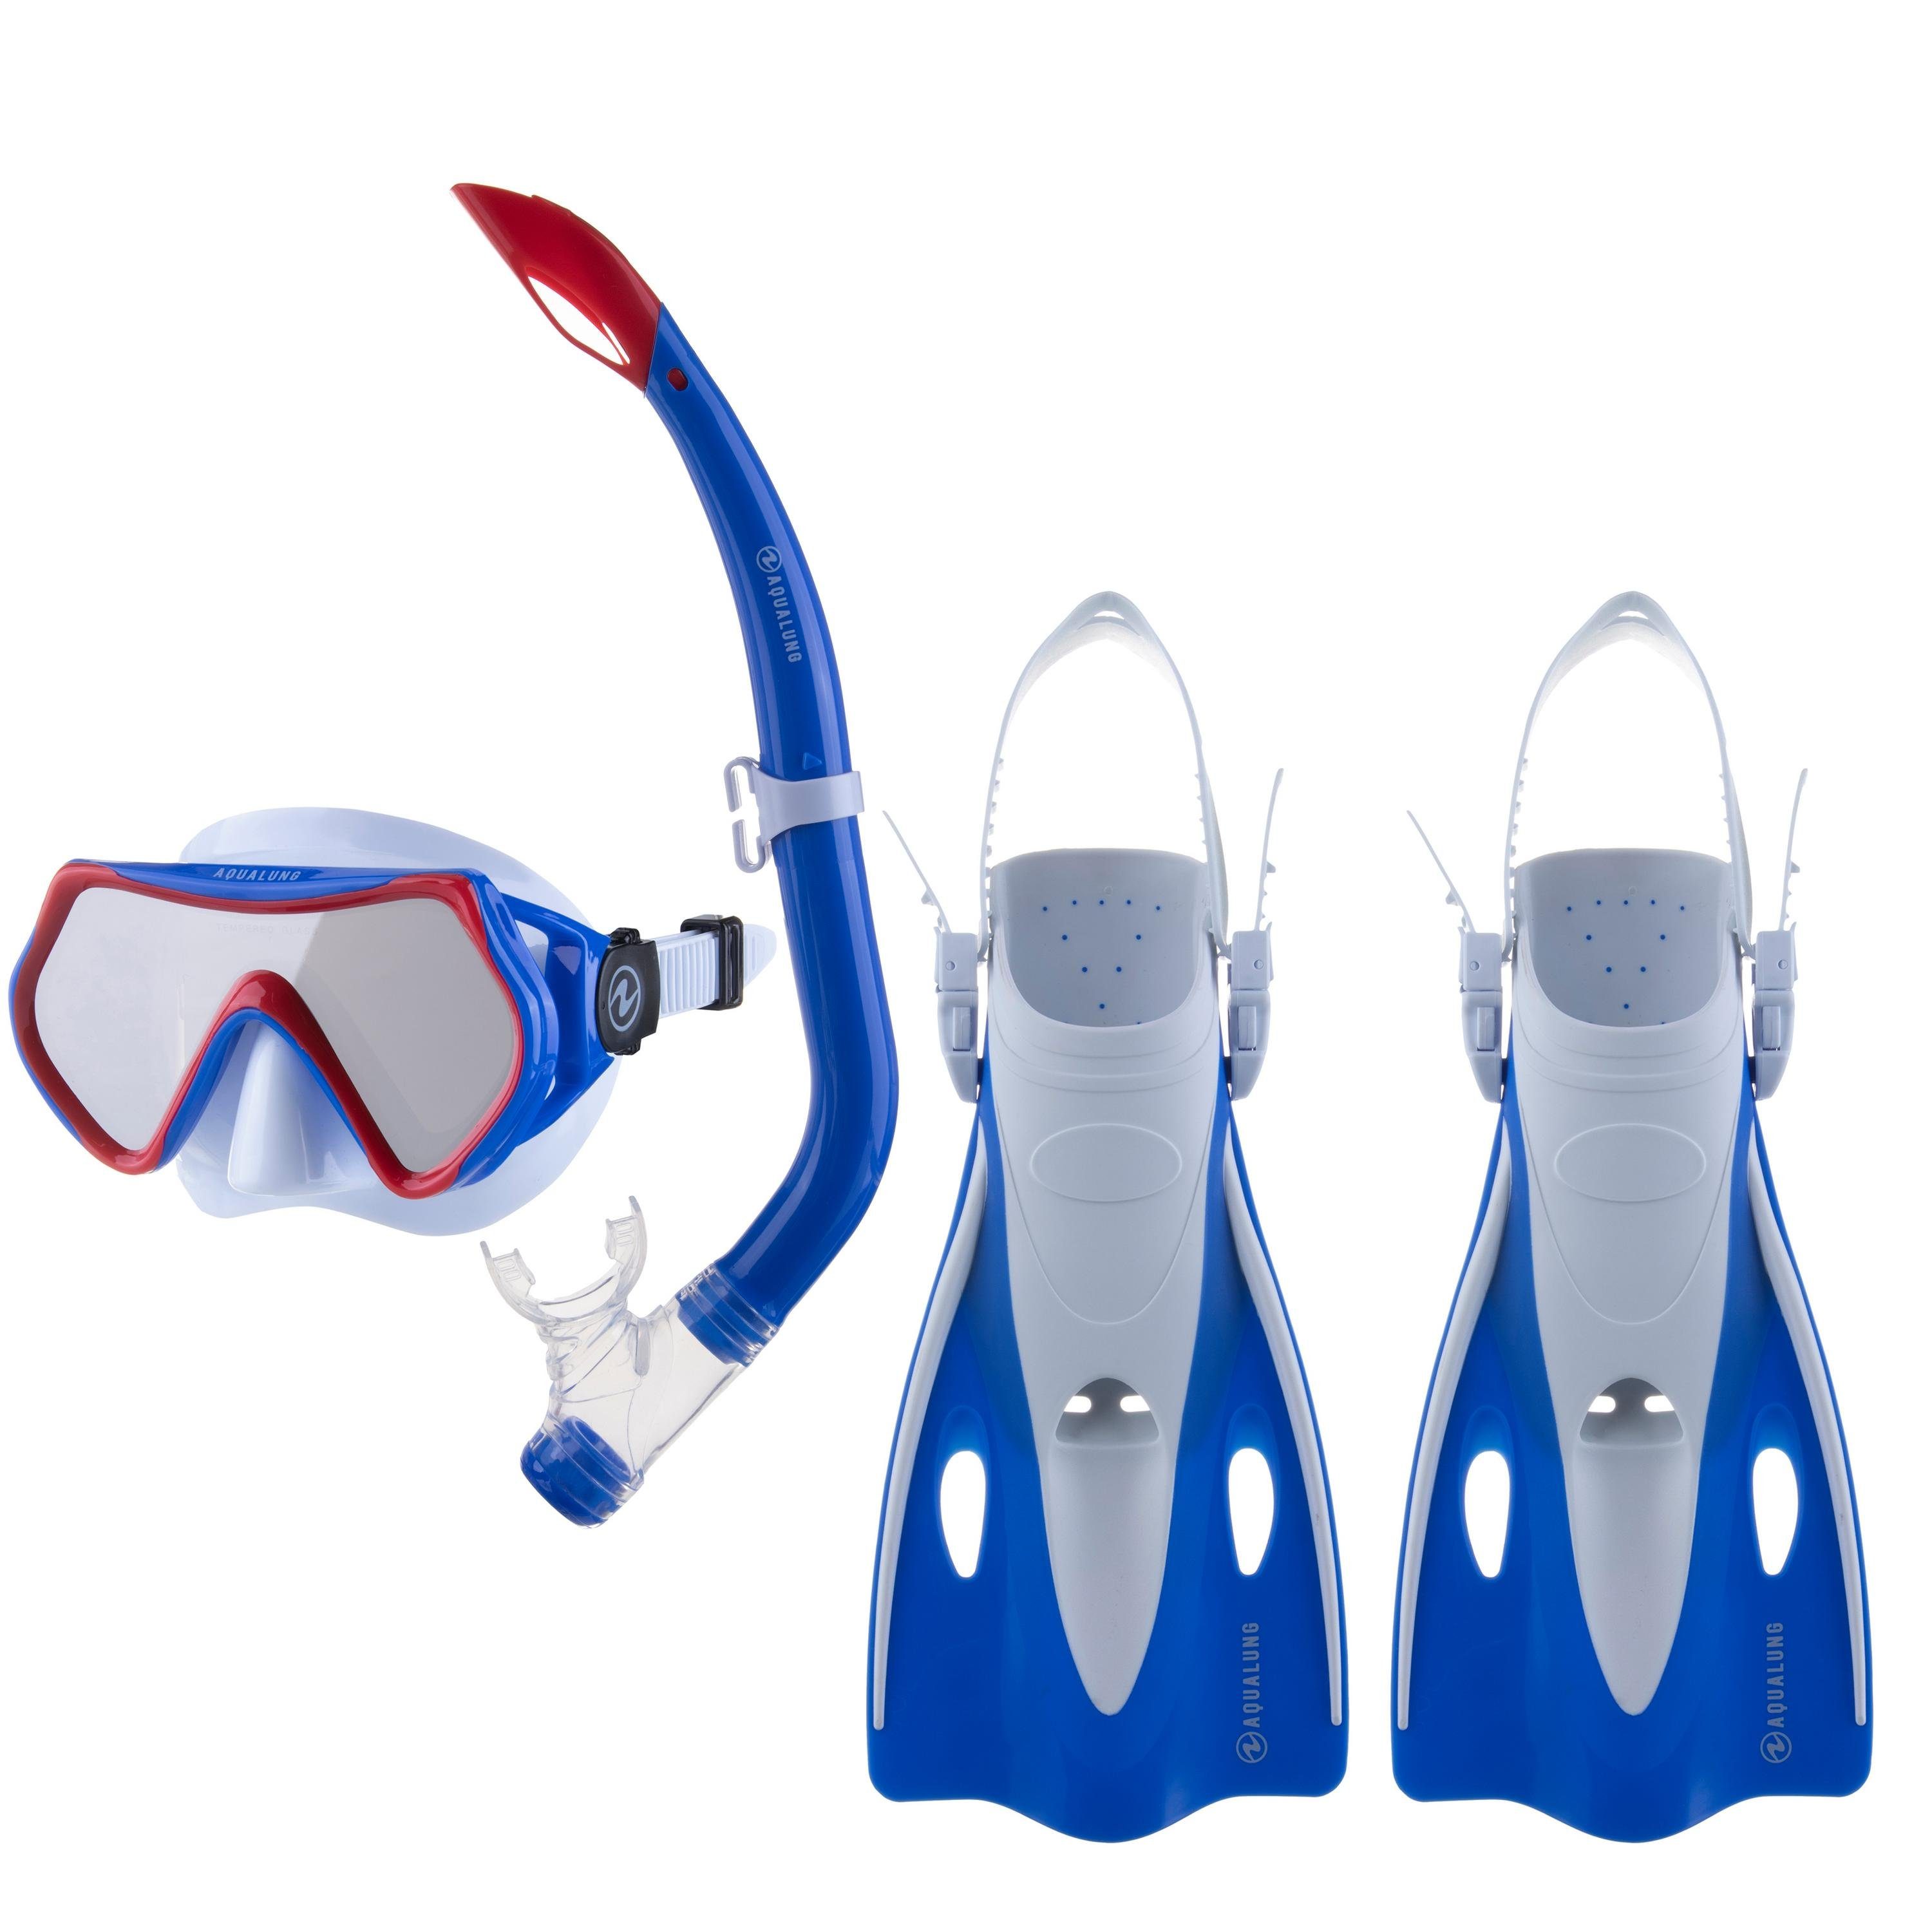 günstigen Preisen erhältlich. Aqua Lung Sport Taucherbrille HERO SET